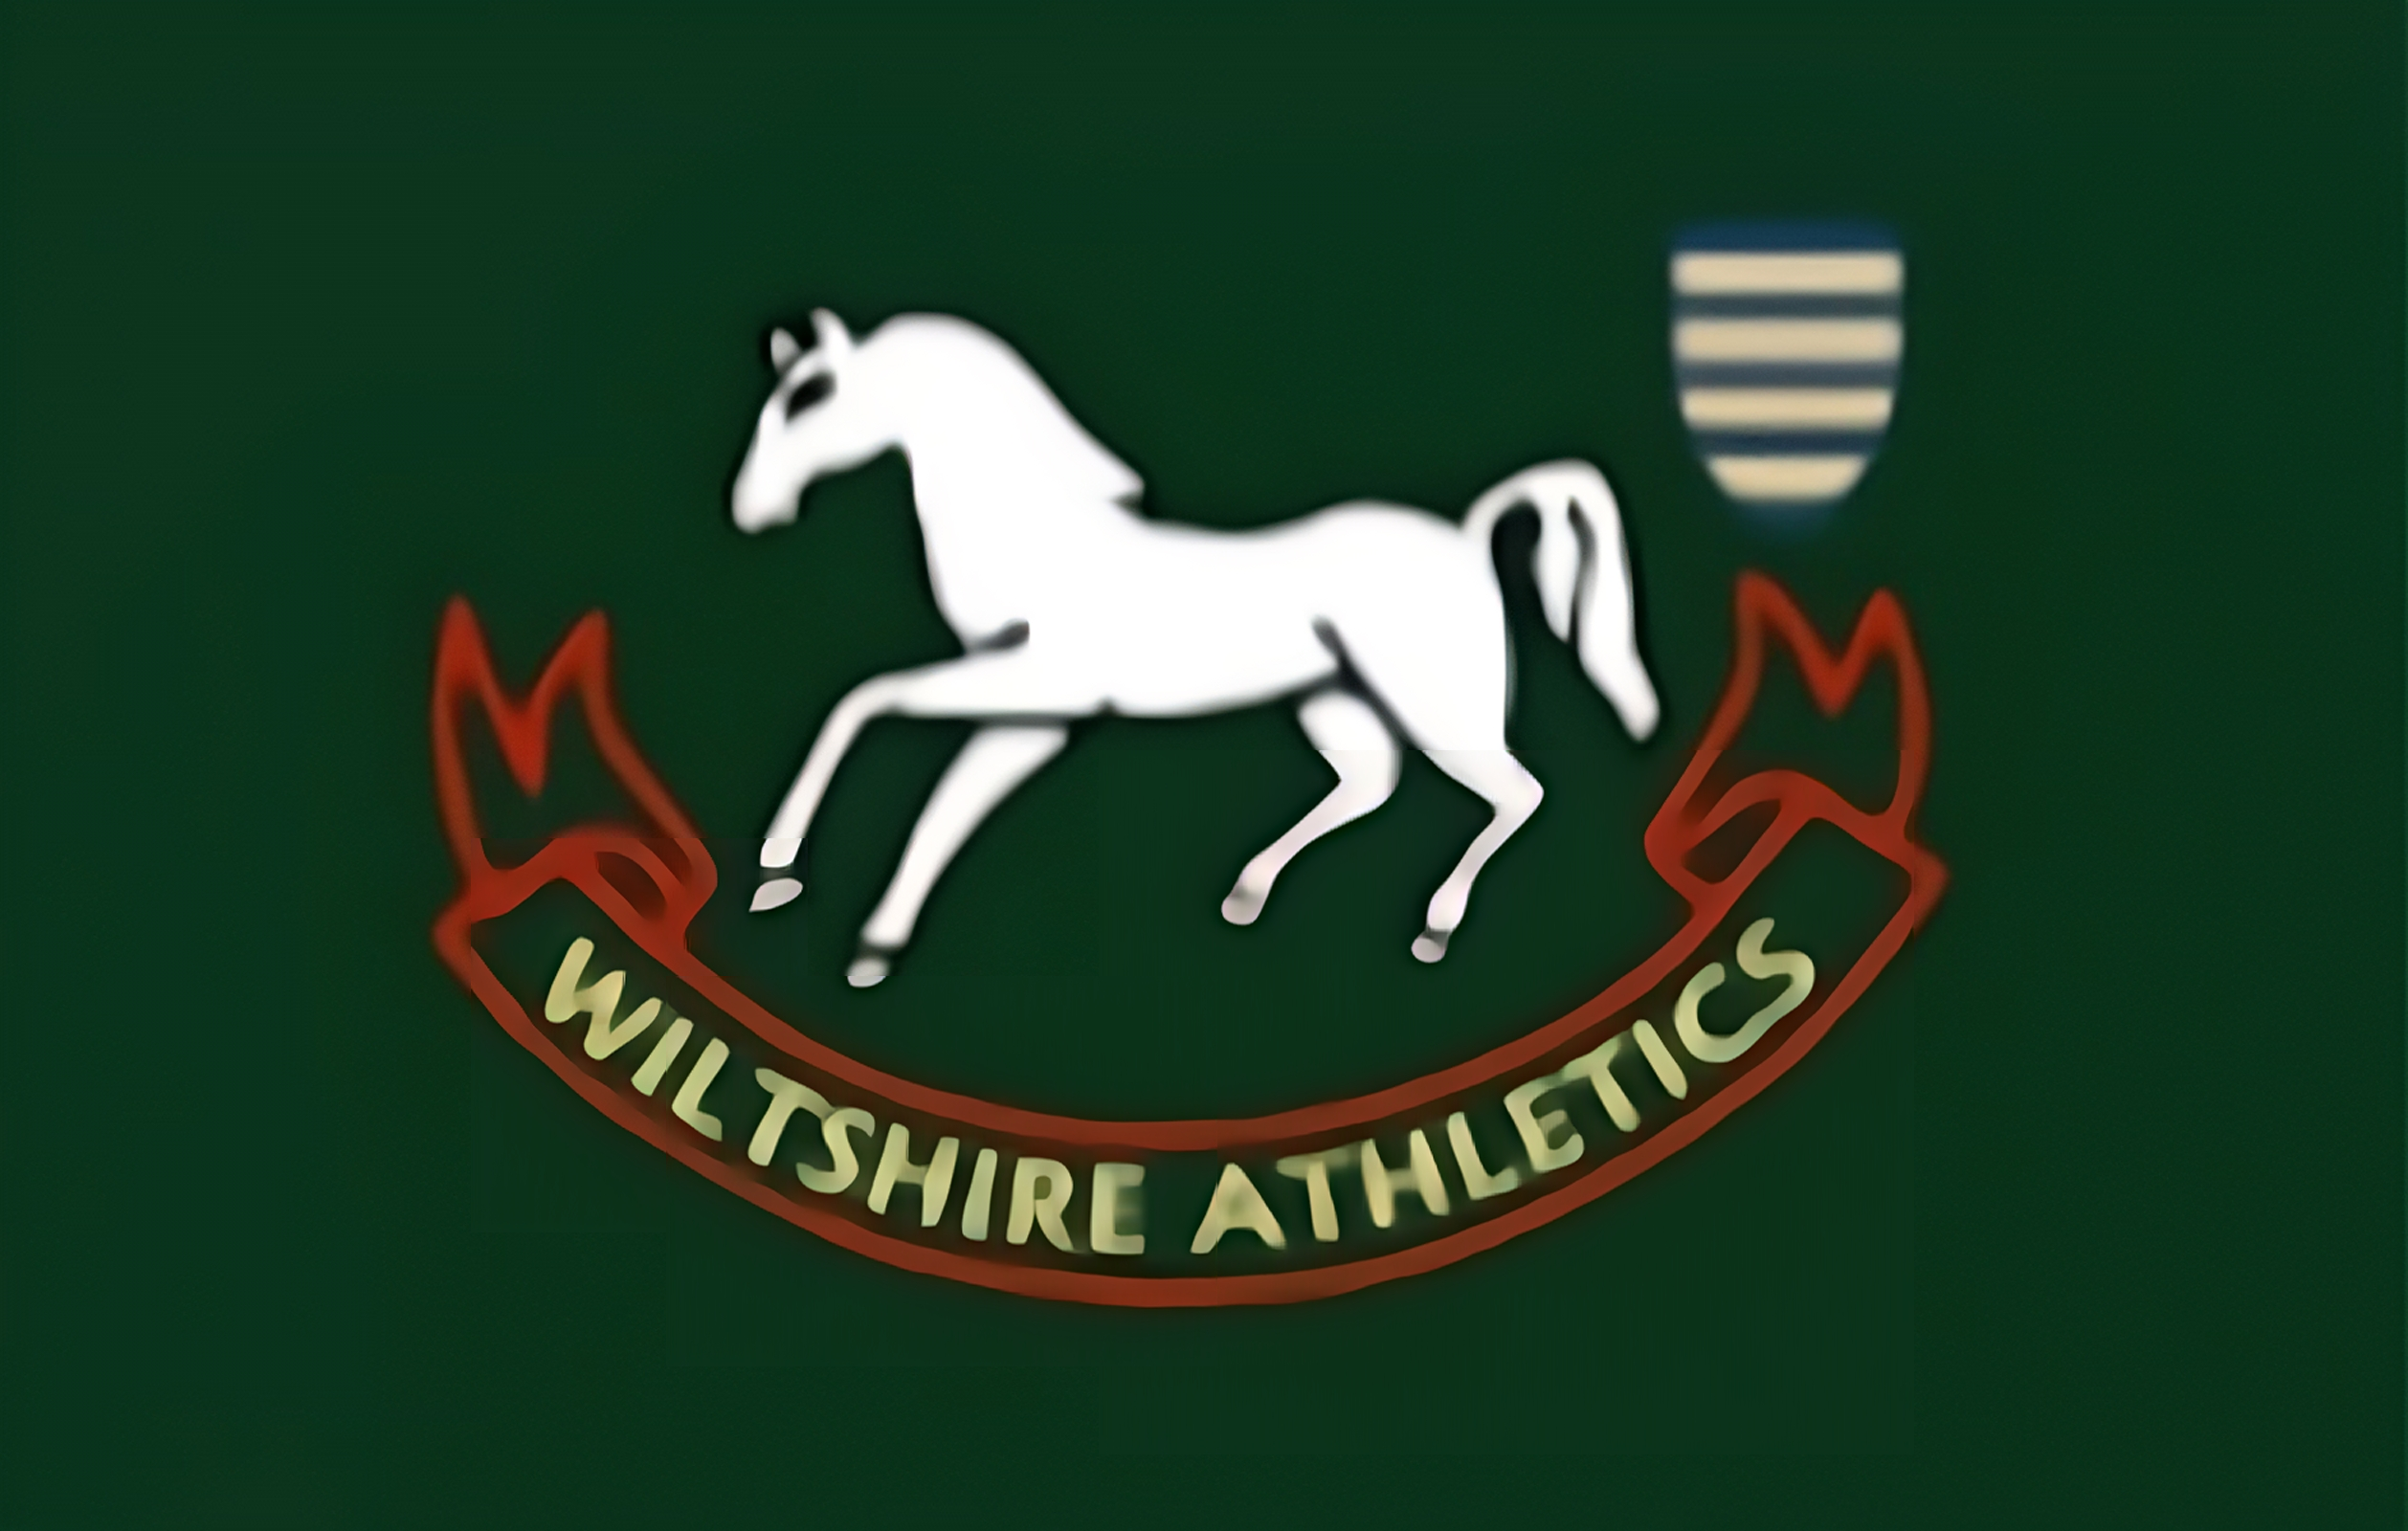 (c) Wiltshire-athletics.org.uk